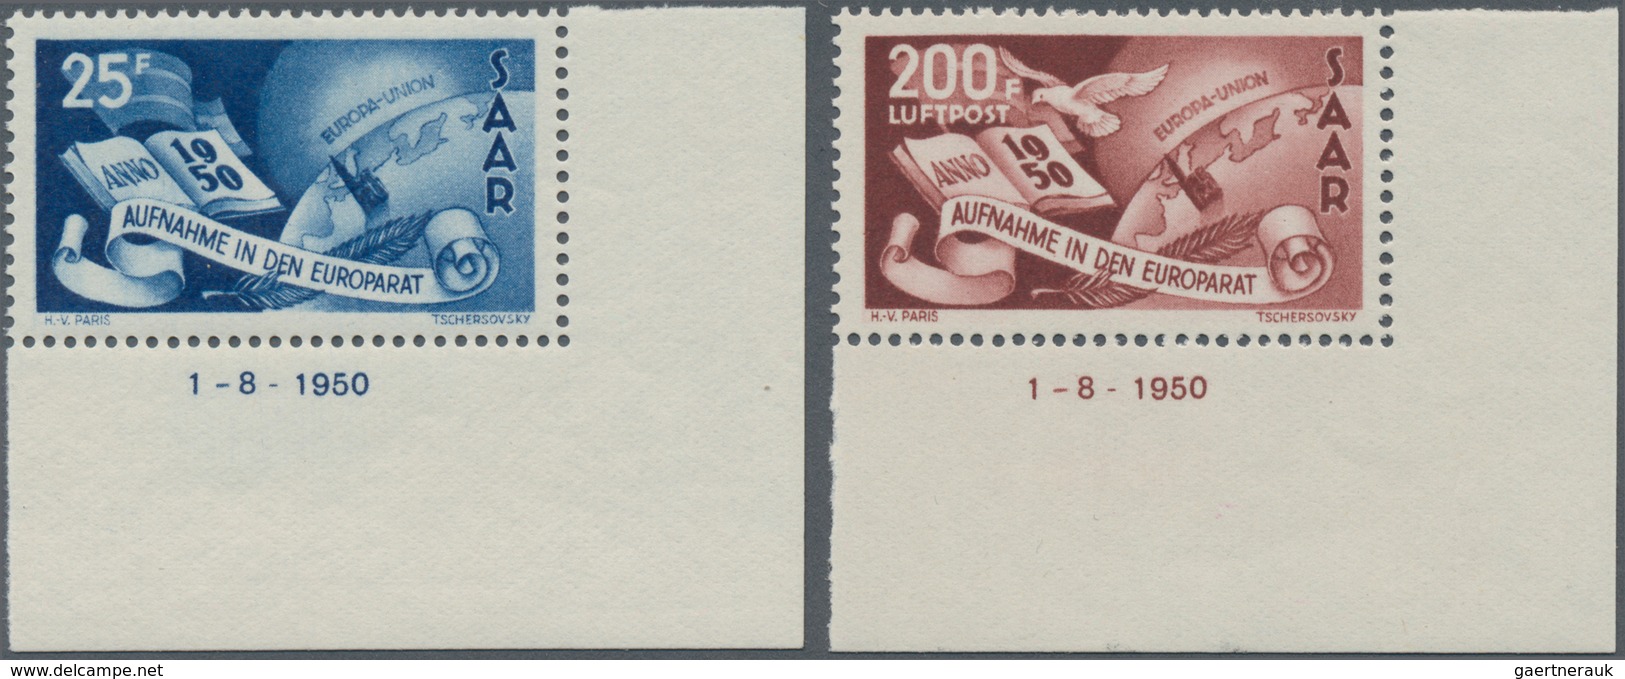 Saarland (1947/56): 1950, Aufnahme Des Saarlandes In Den Europarat, Postfrischer Luxus-Eckrandsatz A - Briefe U. Dokumente